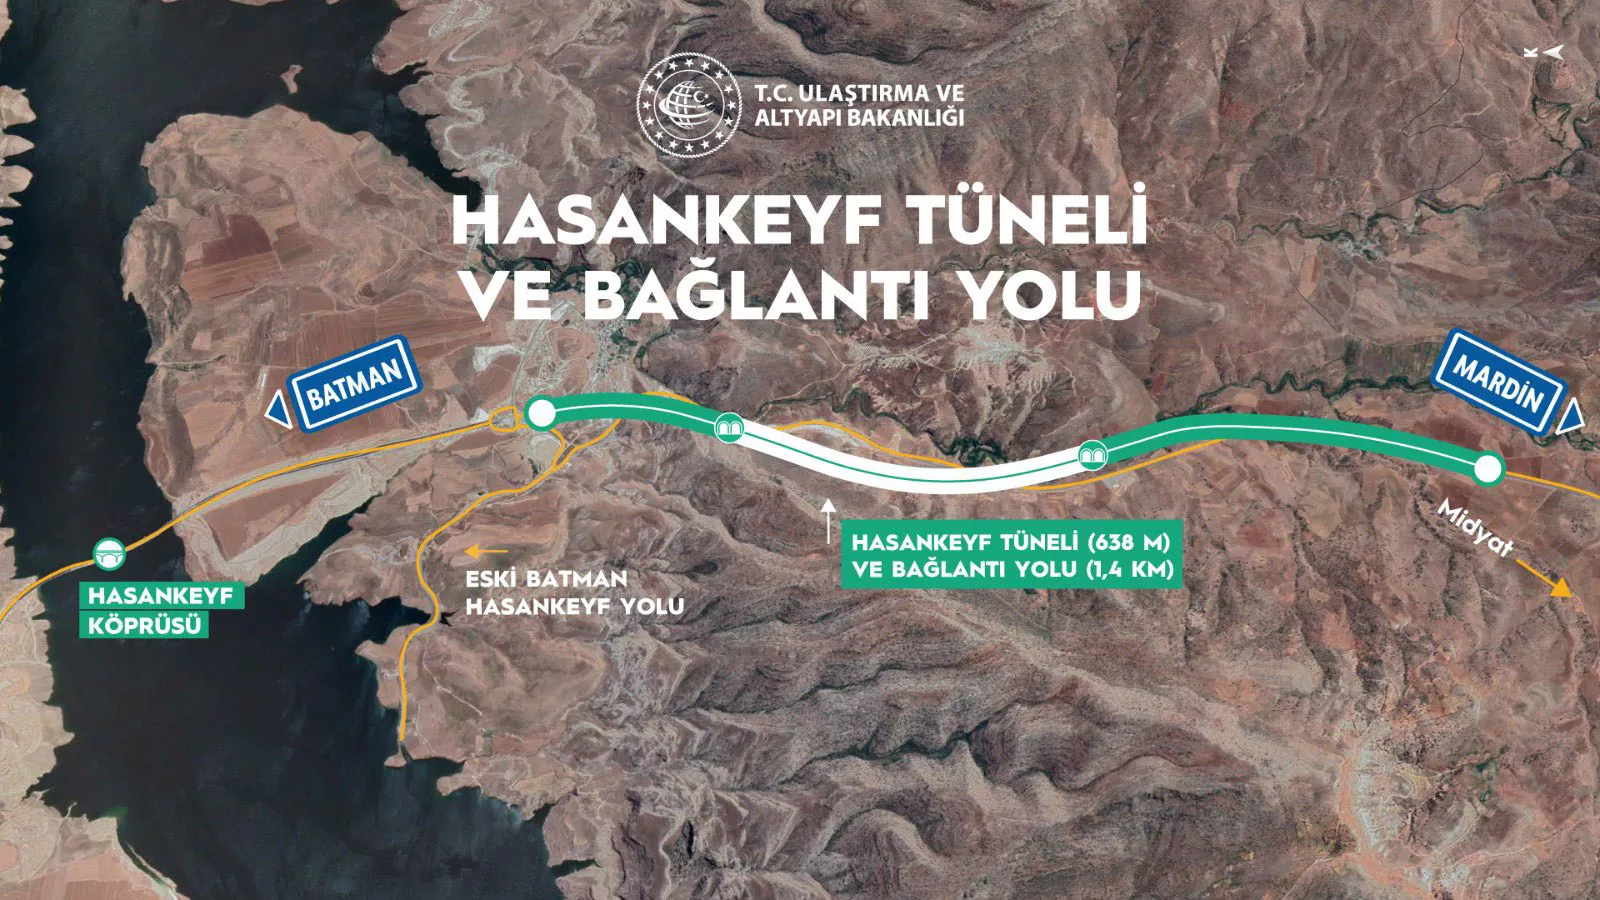 Hasankeyf tuneli ve baglantili yollari hizmete acildir - yerel haberler - haberton